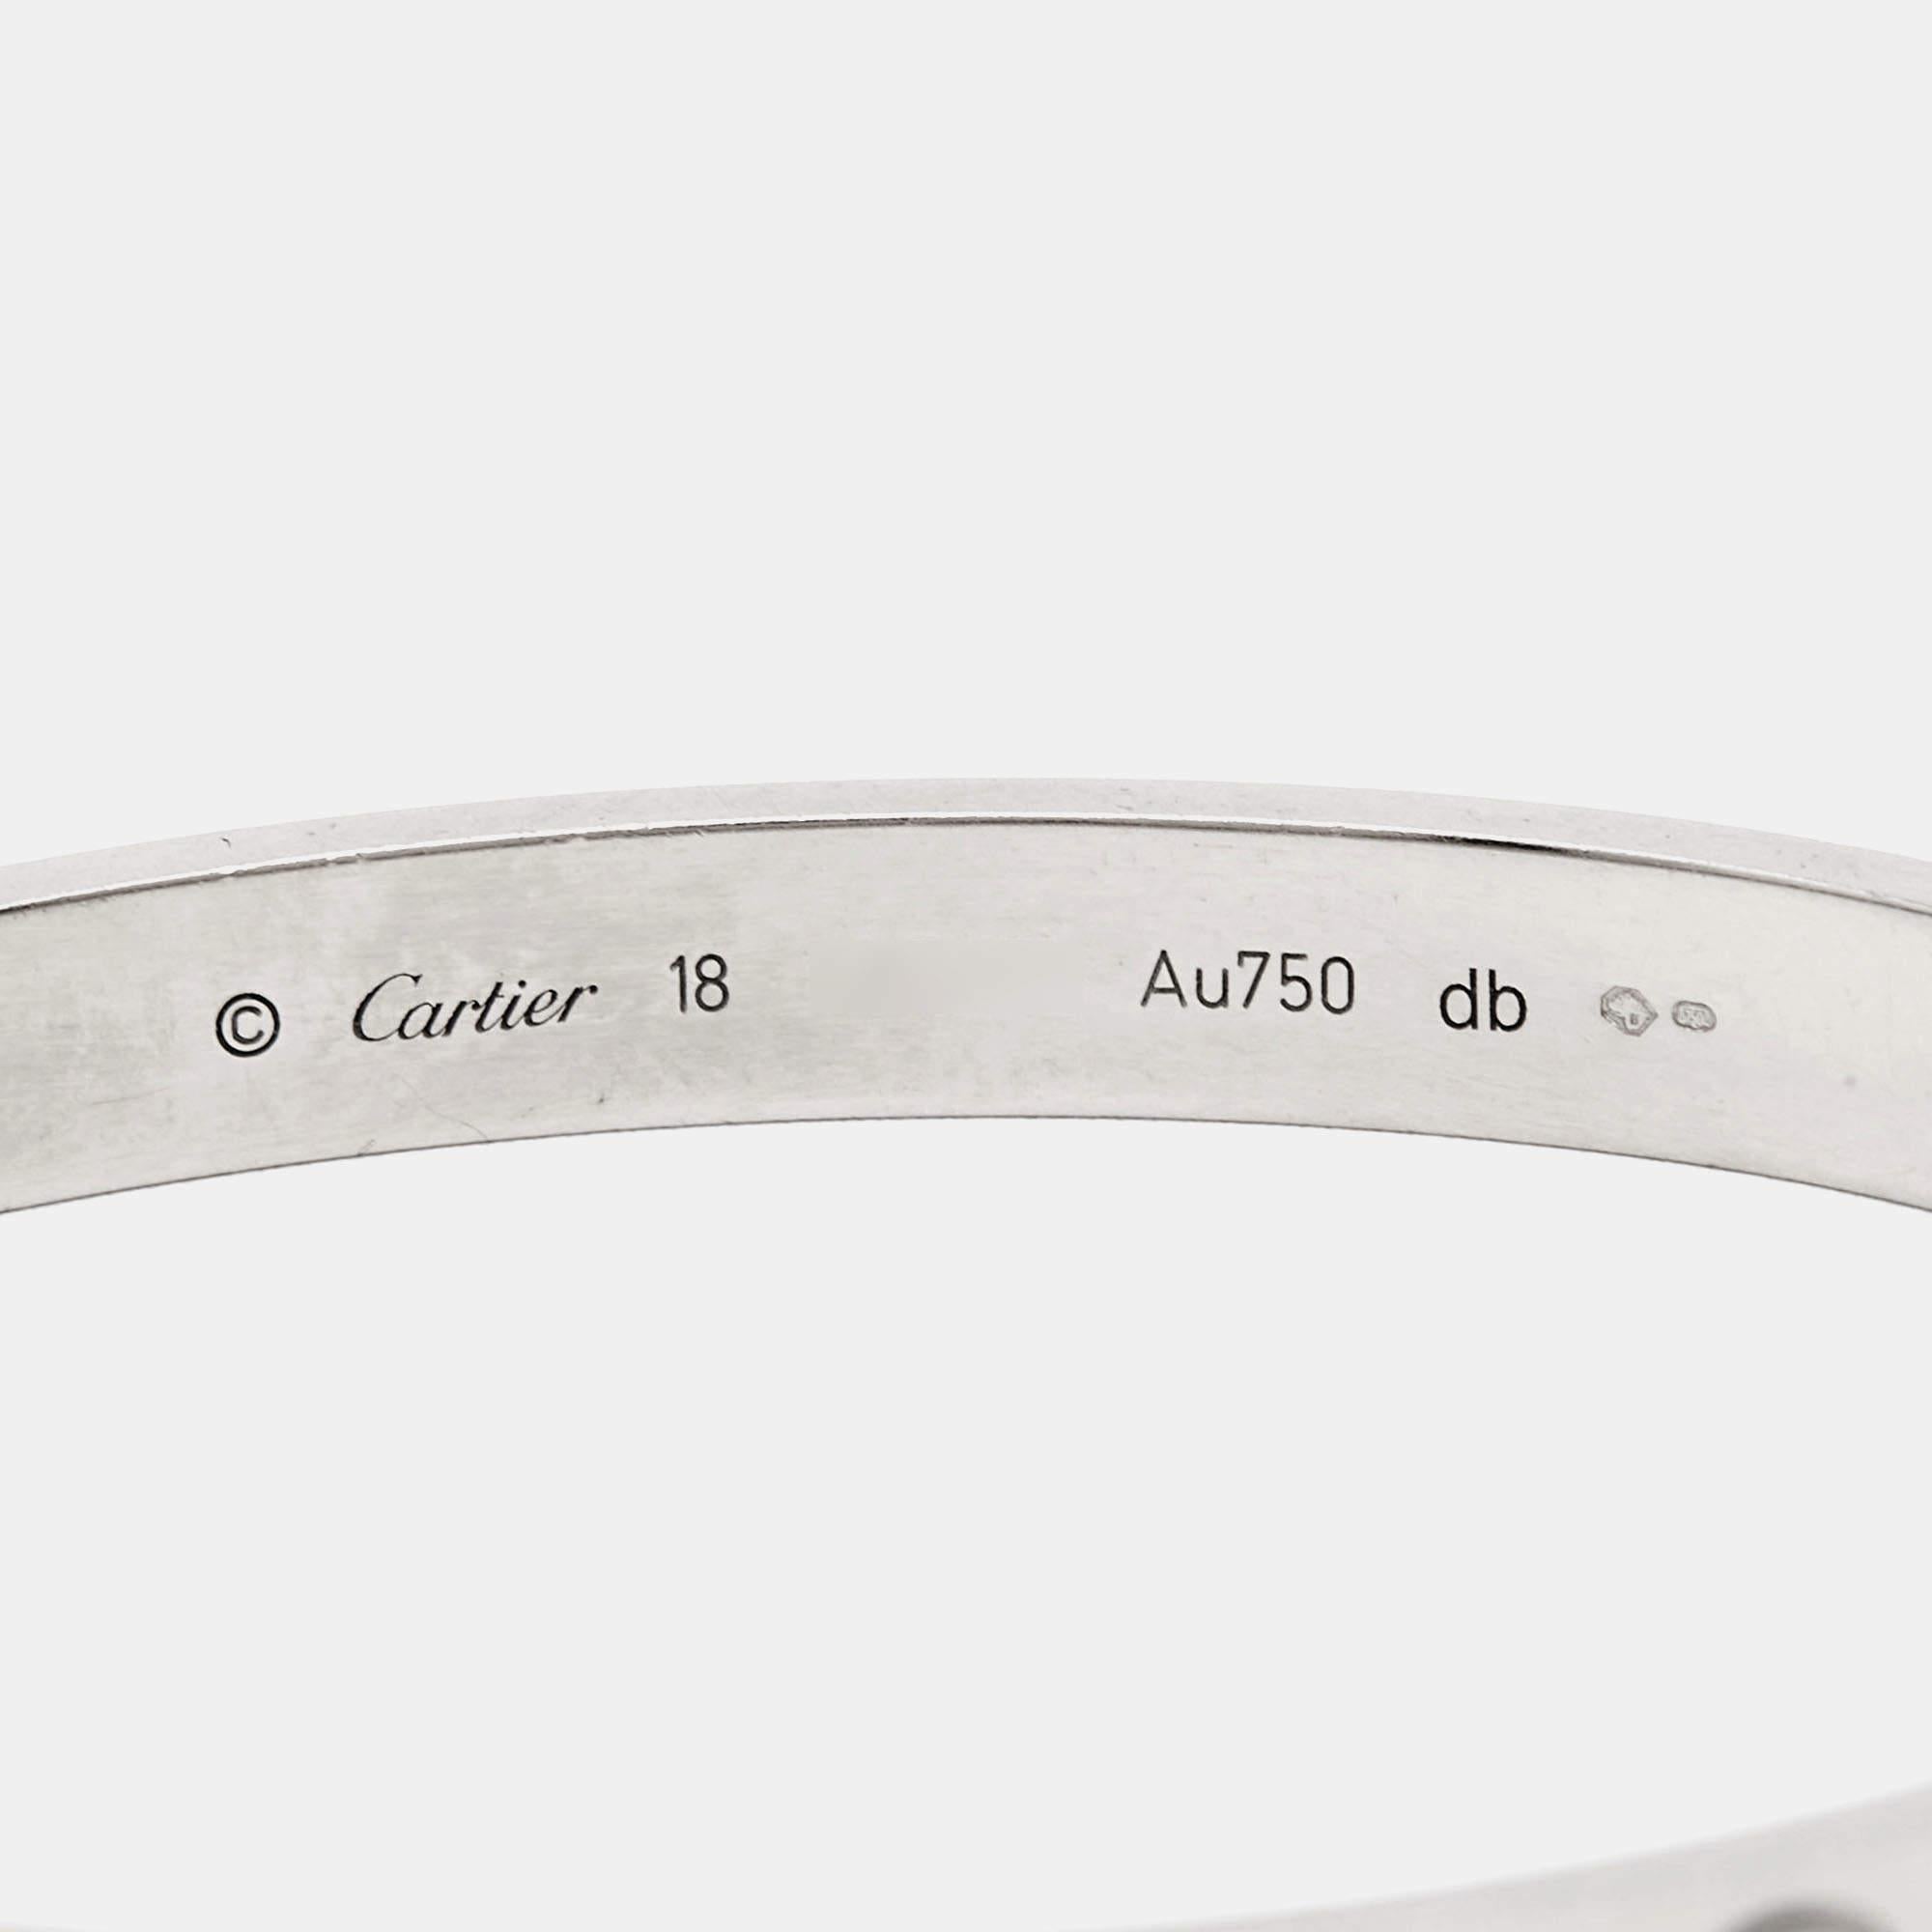 Das Love-Armband von Cartier ist ein modernes Symbol für Luxus und eine Möglichkeit, seine Liebe zu bewahren. Die ikonische Liebeshandschelle ist in einer eleganten Form gestaltet, die sich bequem um das Handgelenk legen lässt. Sie ist mit markanten